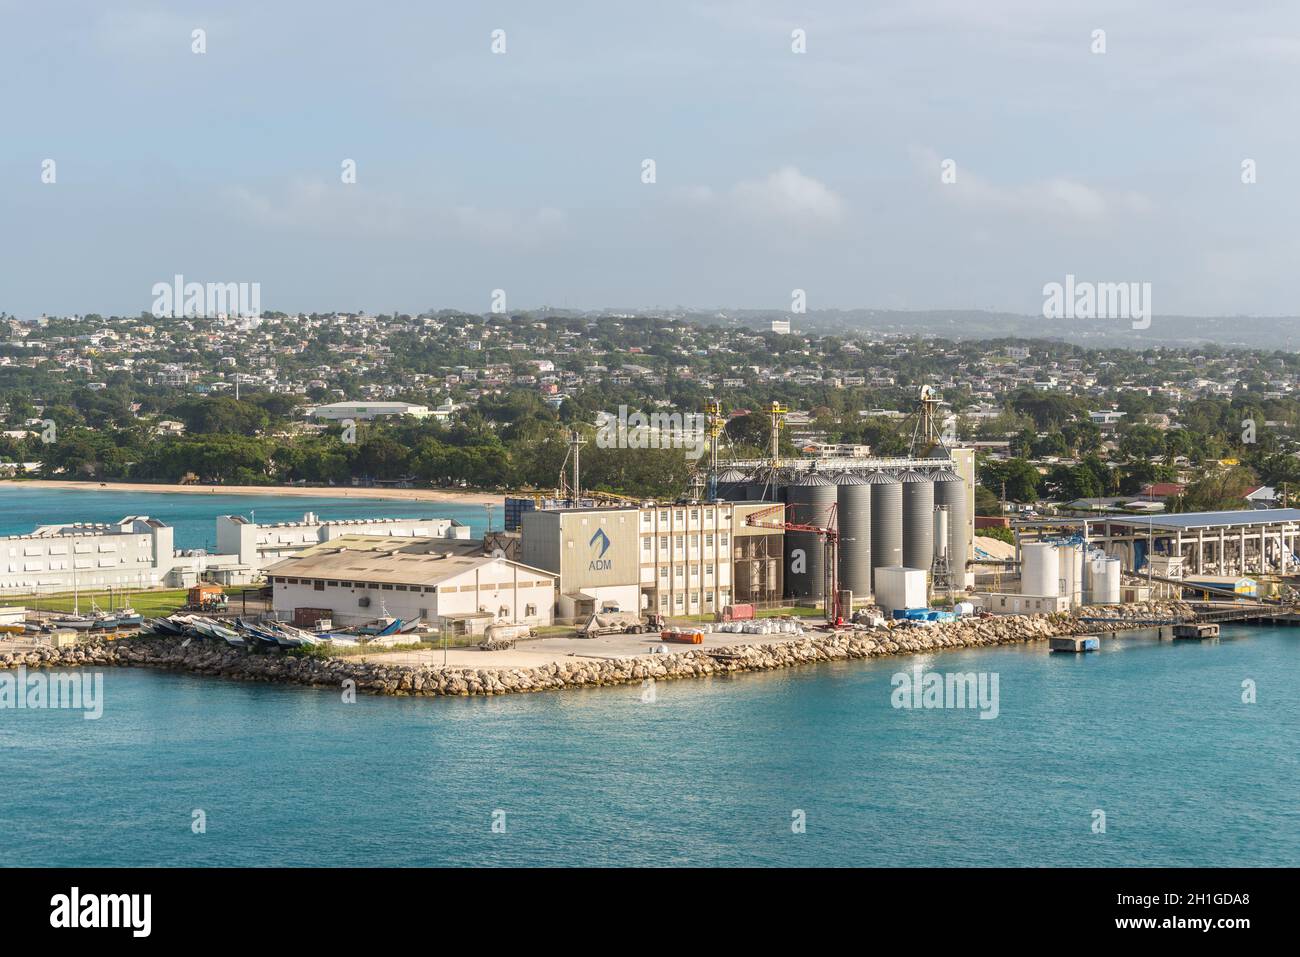 Bridgetown, Barbados - Diciembre 18, 2016: silos de grano y de las infraestructuras portuarias en el puerto de mercancías de Bridgetown, Barbados, el Caribe insular. Foto de stock